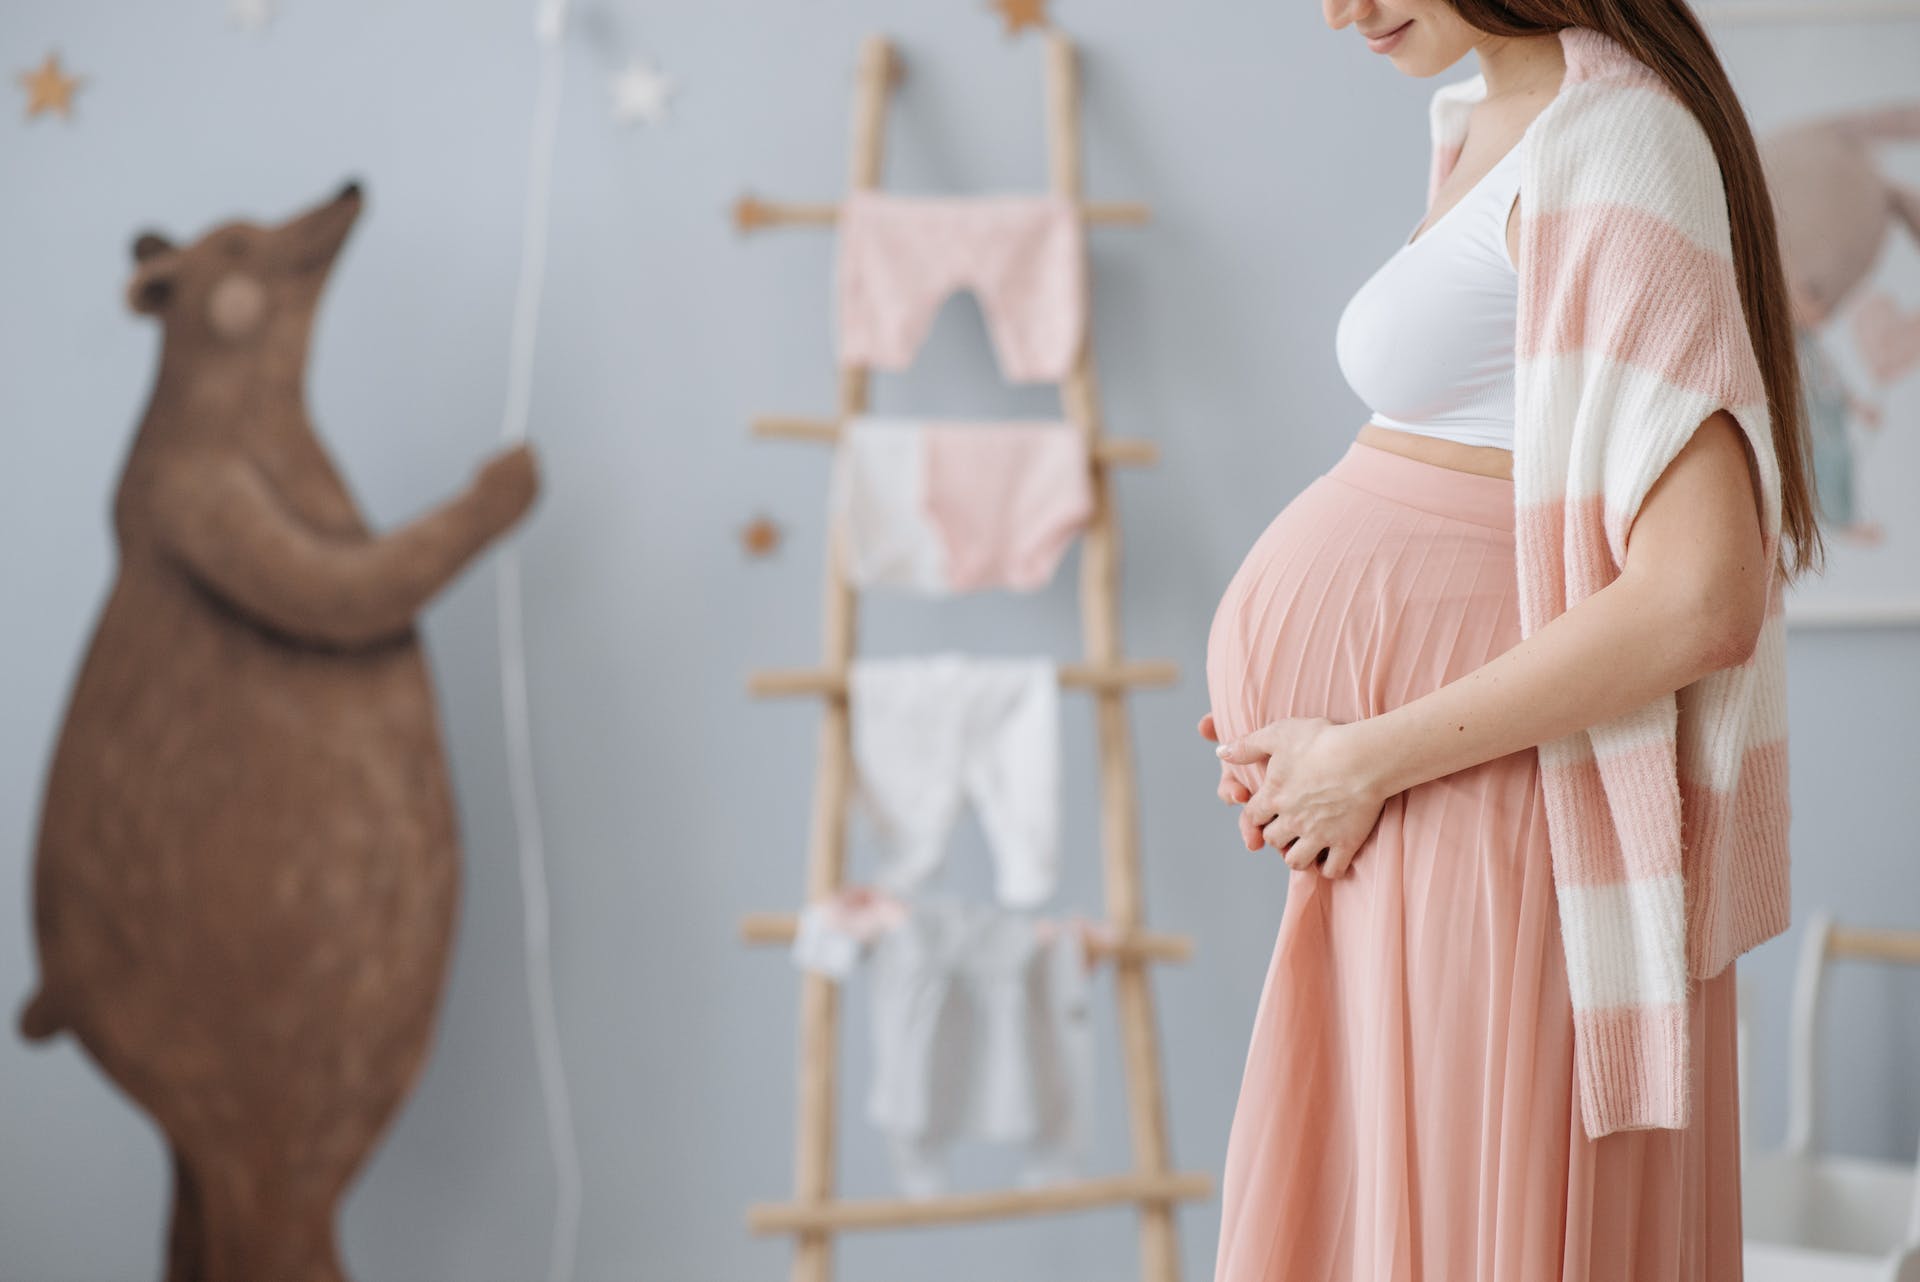 Eine schwangere Frau, die ihren Bauch hält, während sie in einem Kinderzimmer ist | Quelle: Pexels